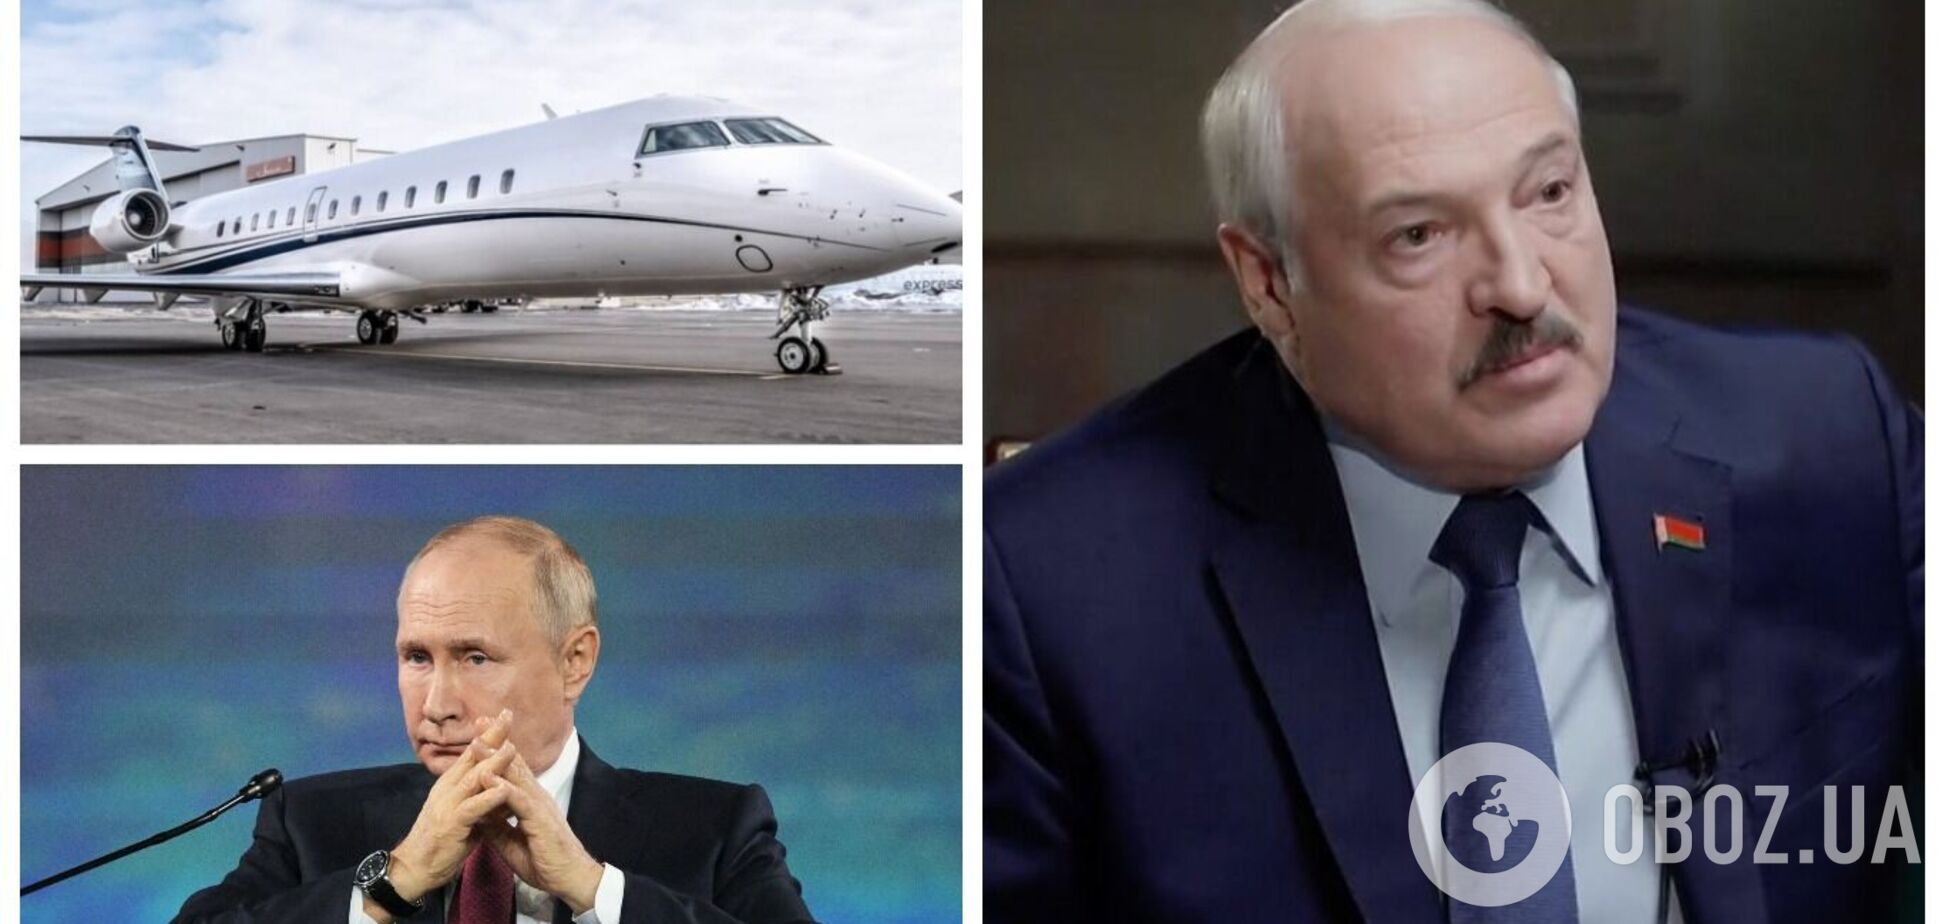 Бізнес-джет сім'ї Лукашенка прибув до Туреччини: у Росії заявили, що Путін говорив з диктатором Білорусі